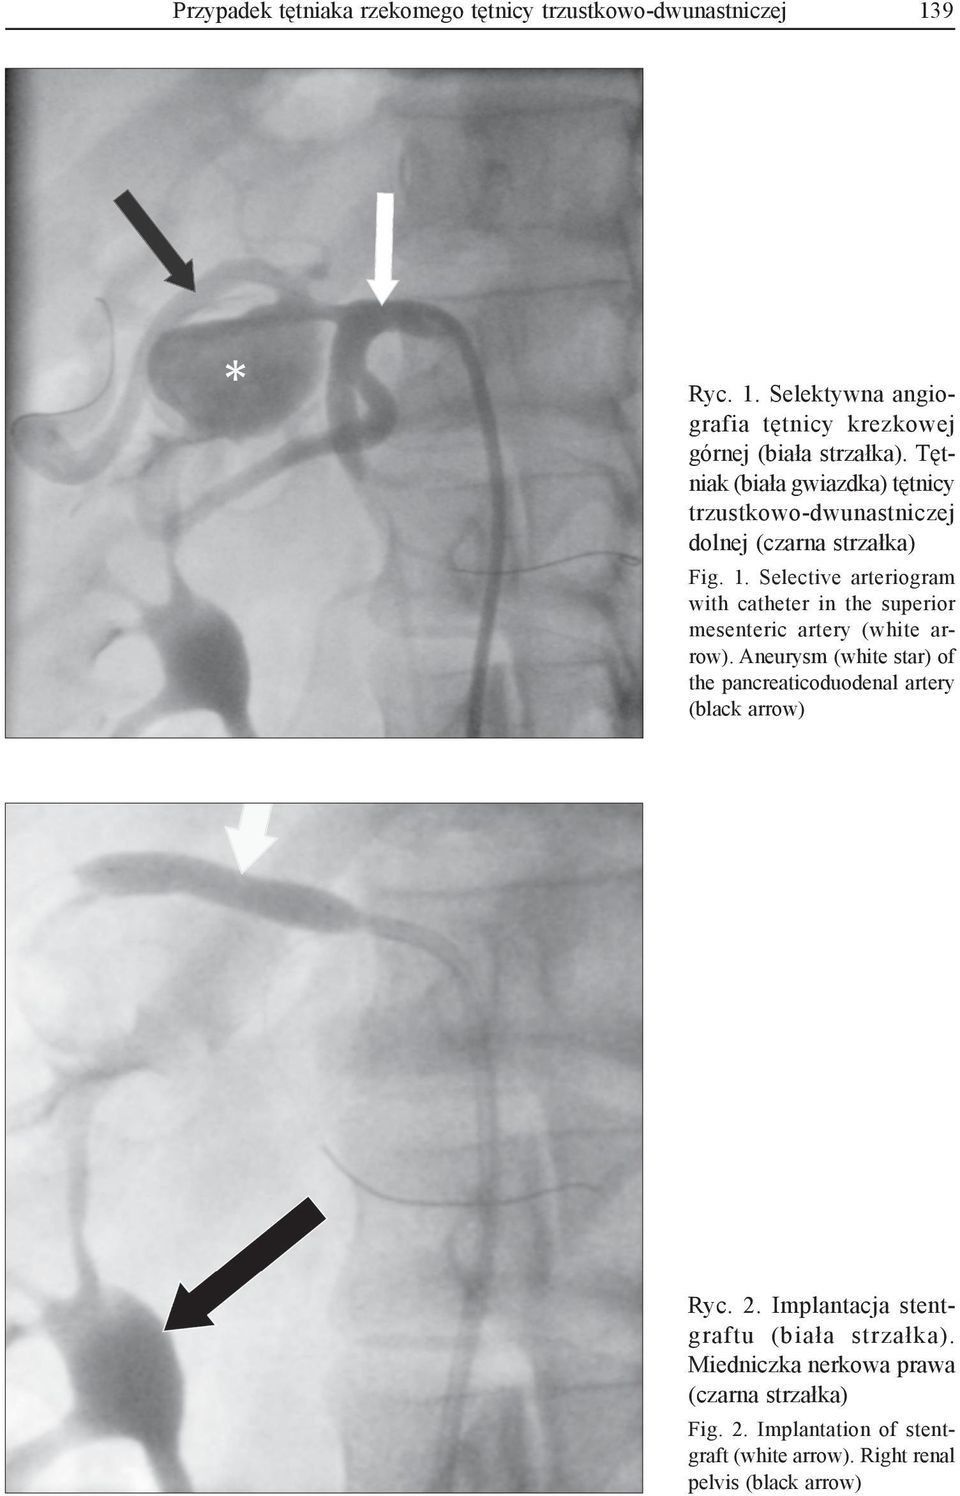 Selective arteriogram with catheter in the superior mesenteric artery (white arrow).